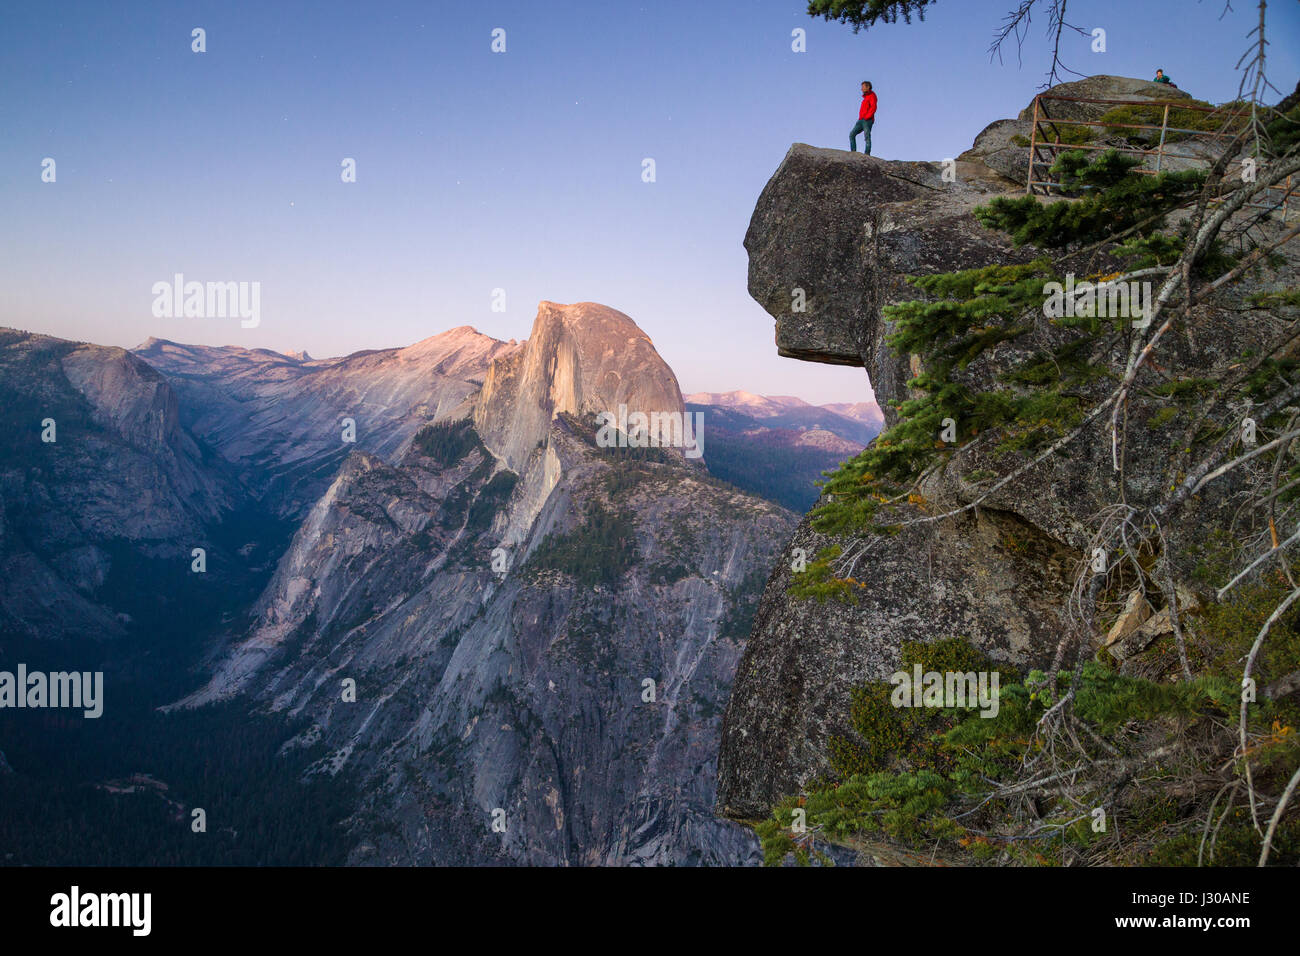 L'intrépide randonneur est debout sur un rocher en surplomb en profitant de la vue vers célèbre Demi Dôme à Glacier Point oublier dans Twilight, Yosemite NP, USA Banque D'Images